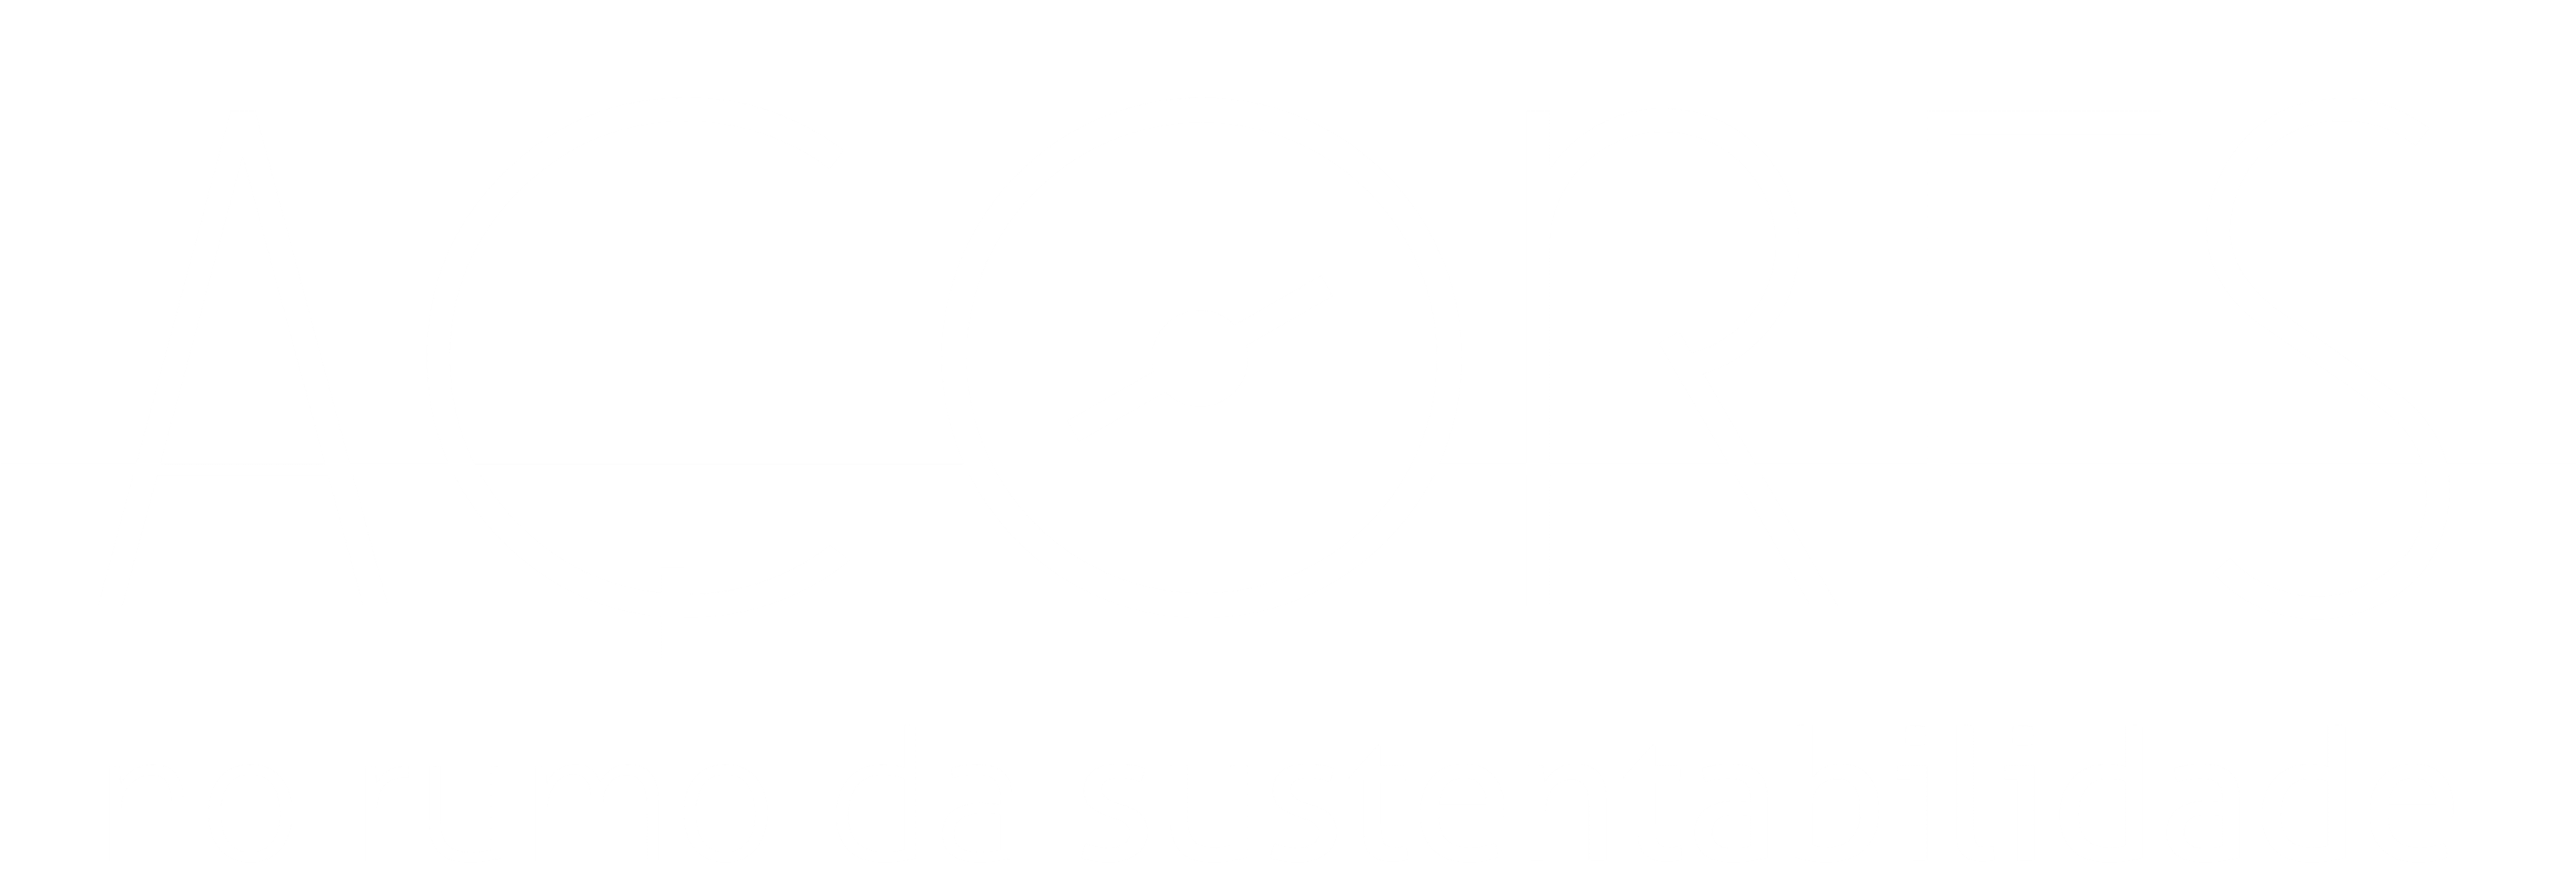 Açores – No rumo da sustentabilidade